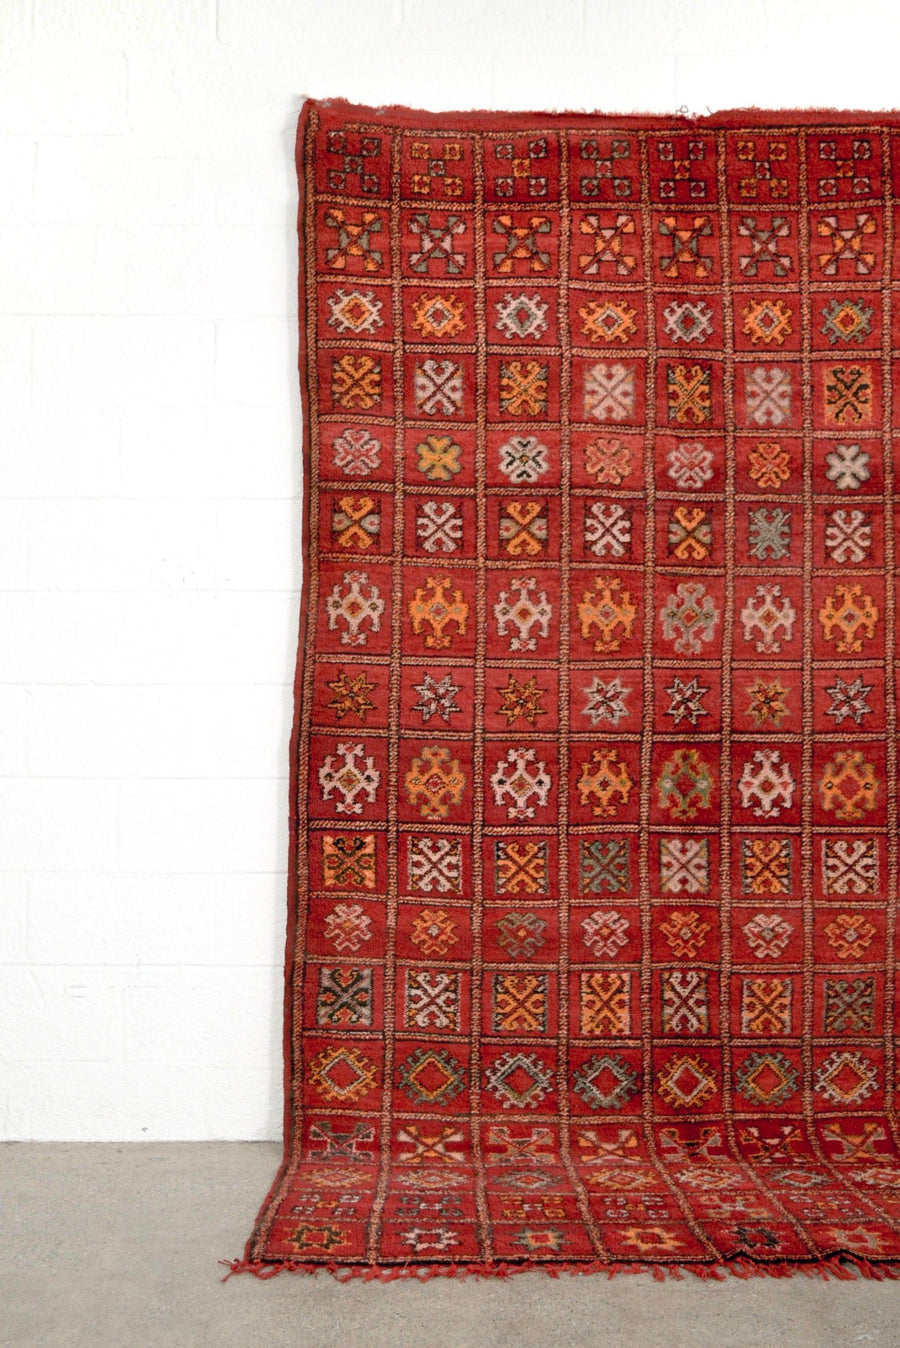 Vintage Moroccan Red Boujad Wool Floor Area Rug